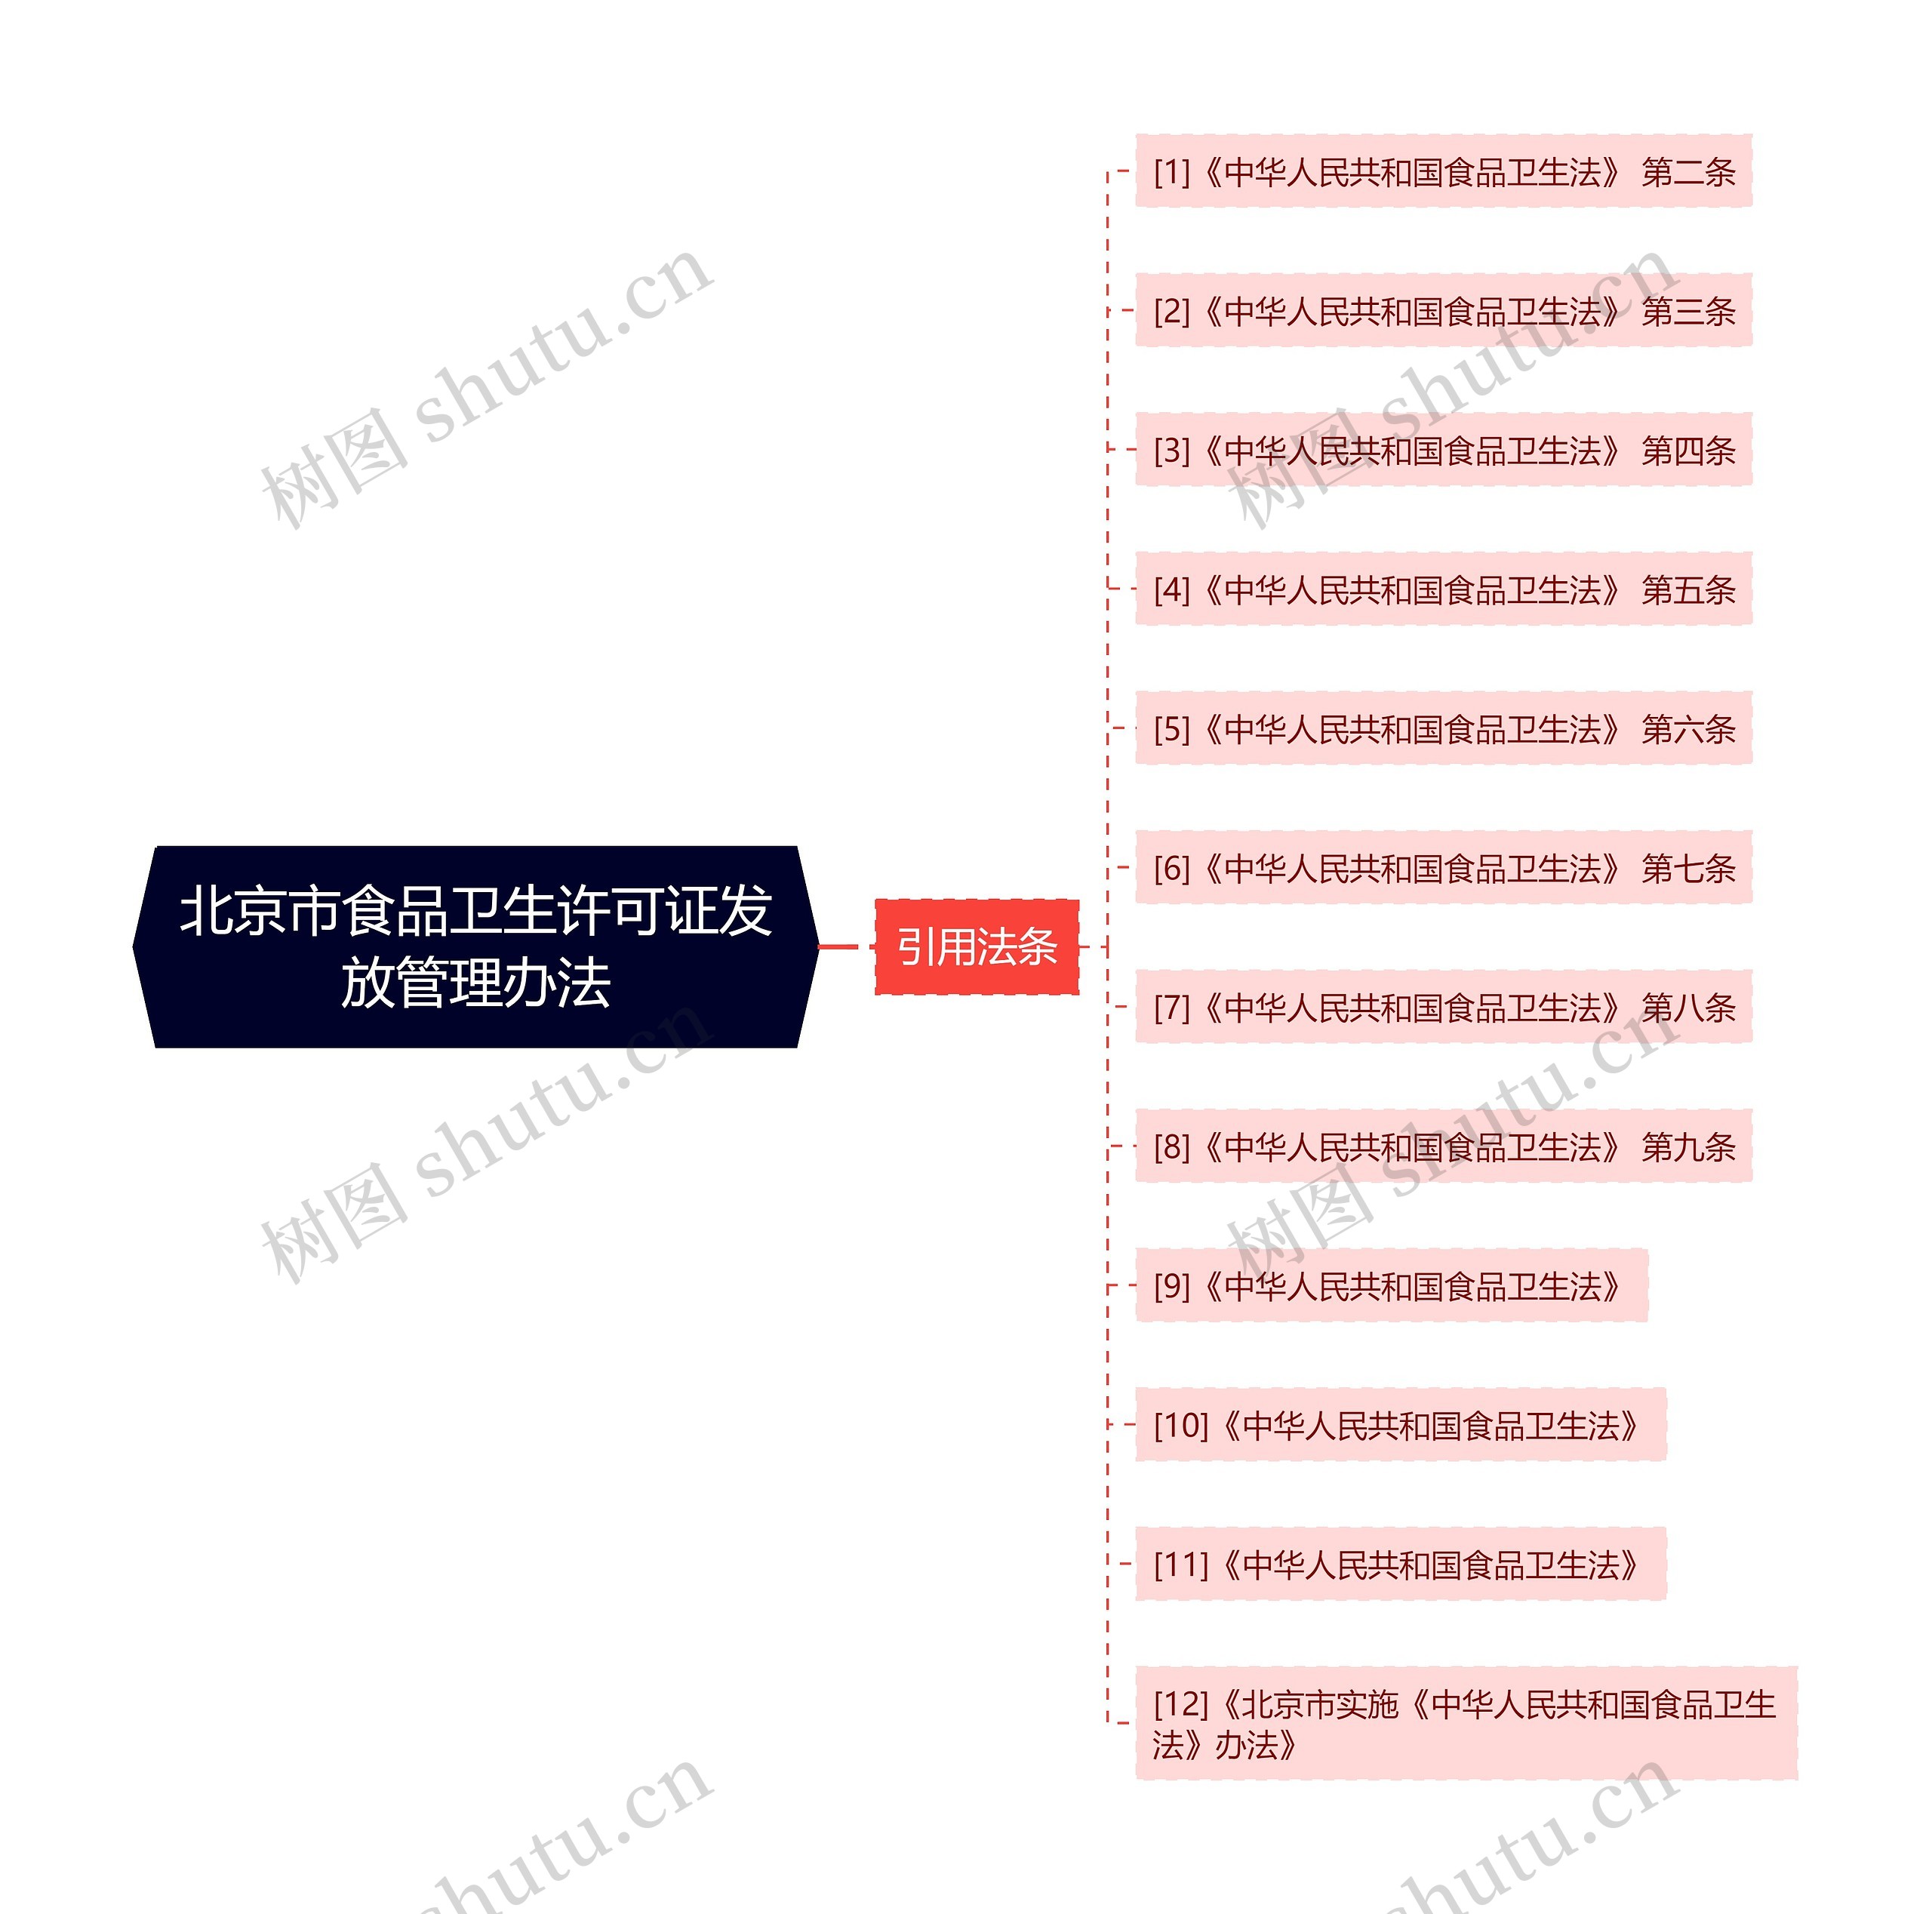 北京市食品卫生许可证发放管理办法